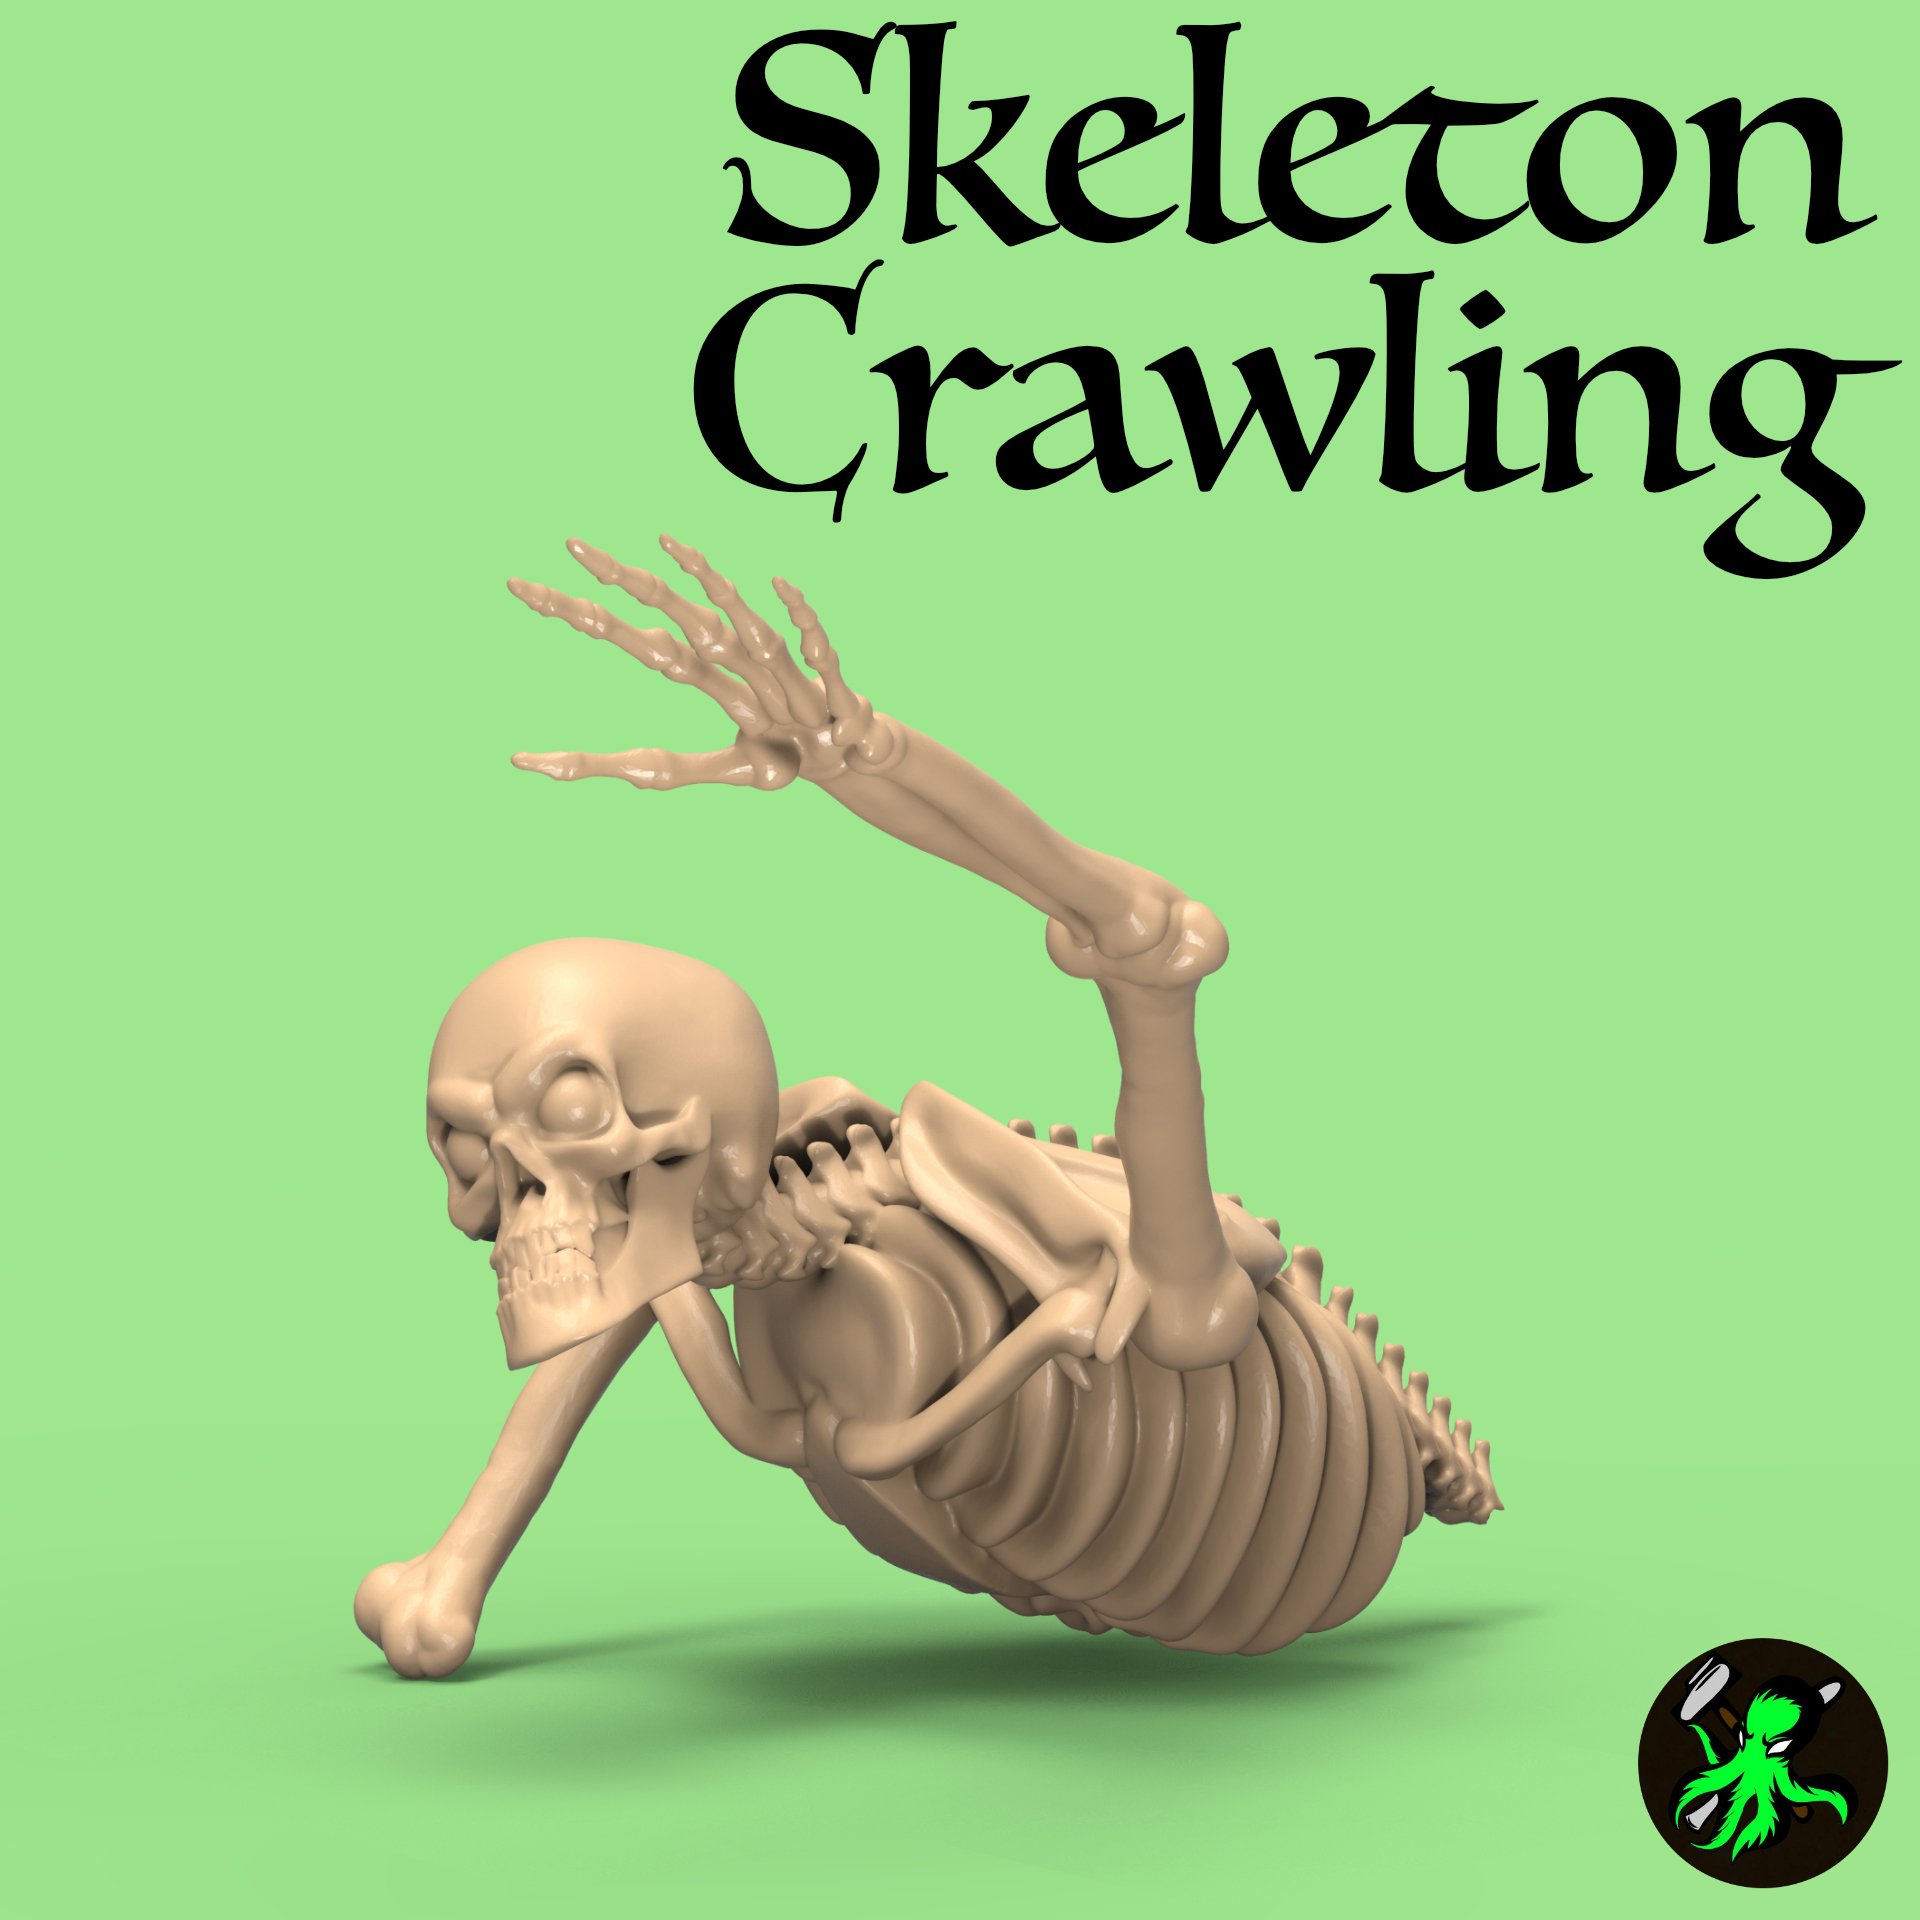 Skeleton Crawling.jpg